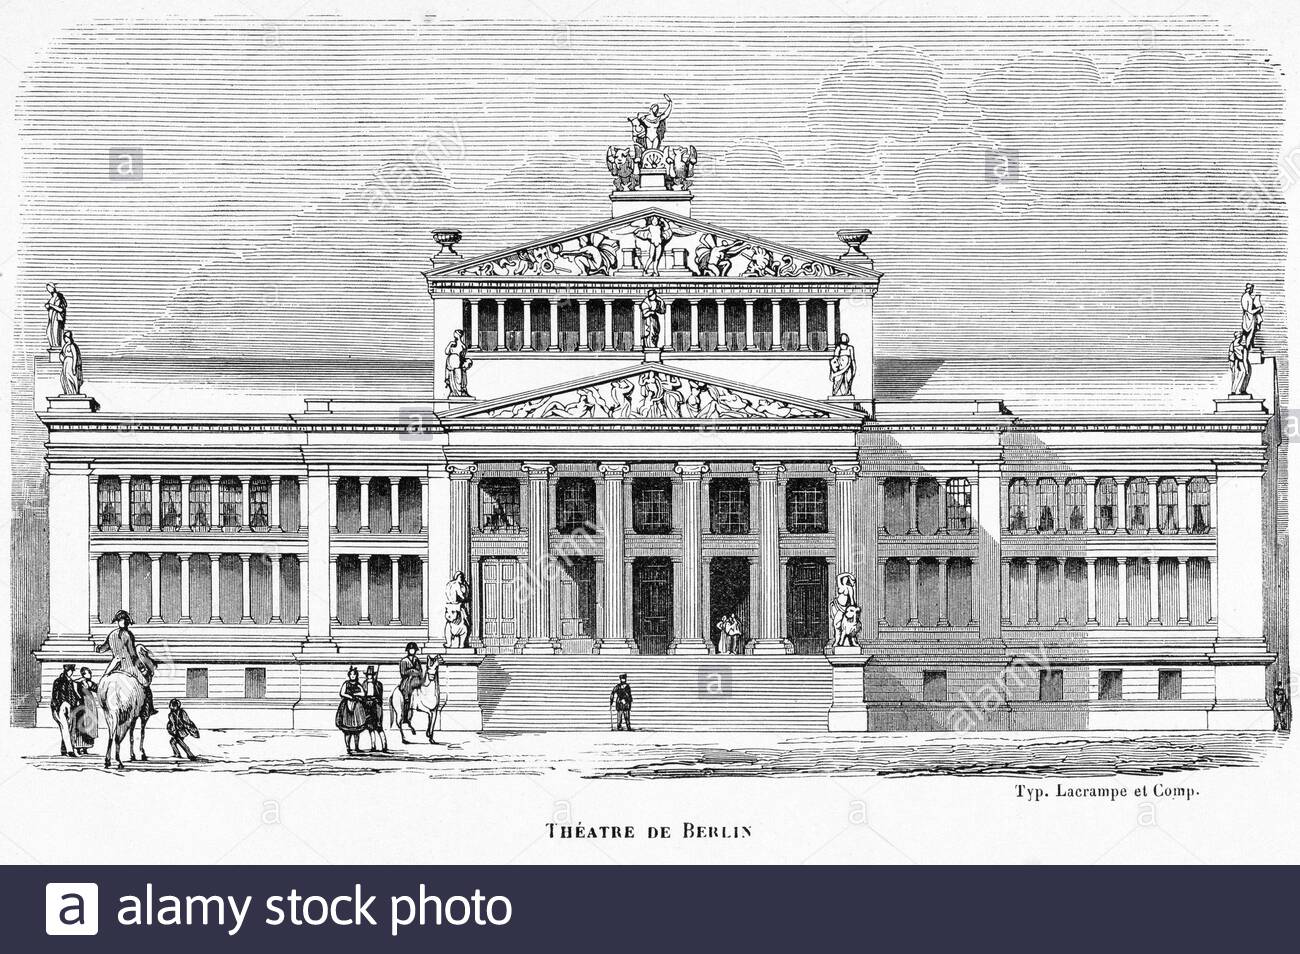 La sala concerti di Berlino in piazza Gendarmenmarkt a Berlino, illustrazione d'epoca della c1860 Foto Stock